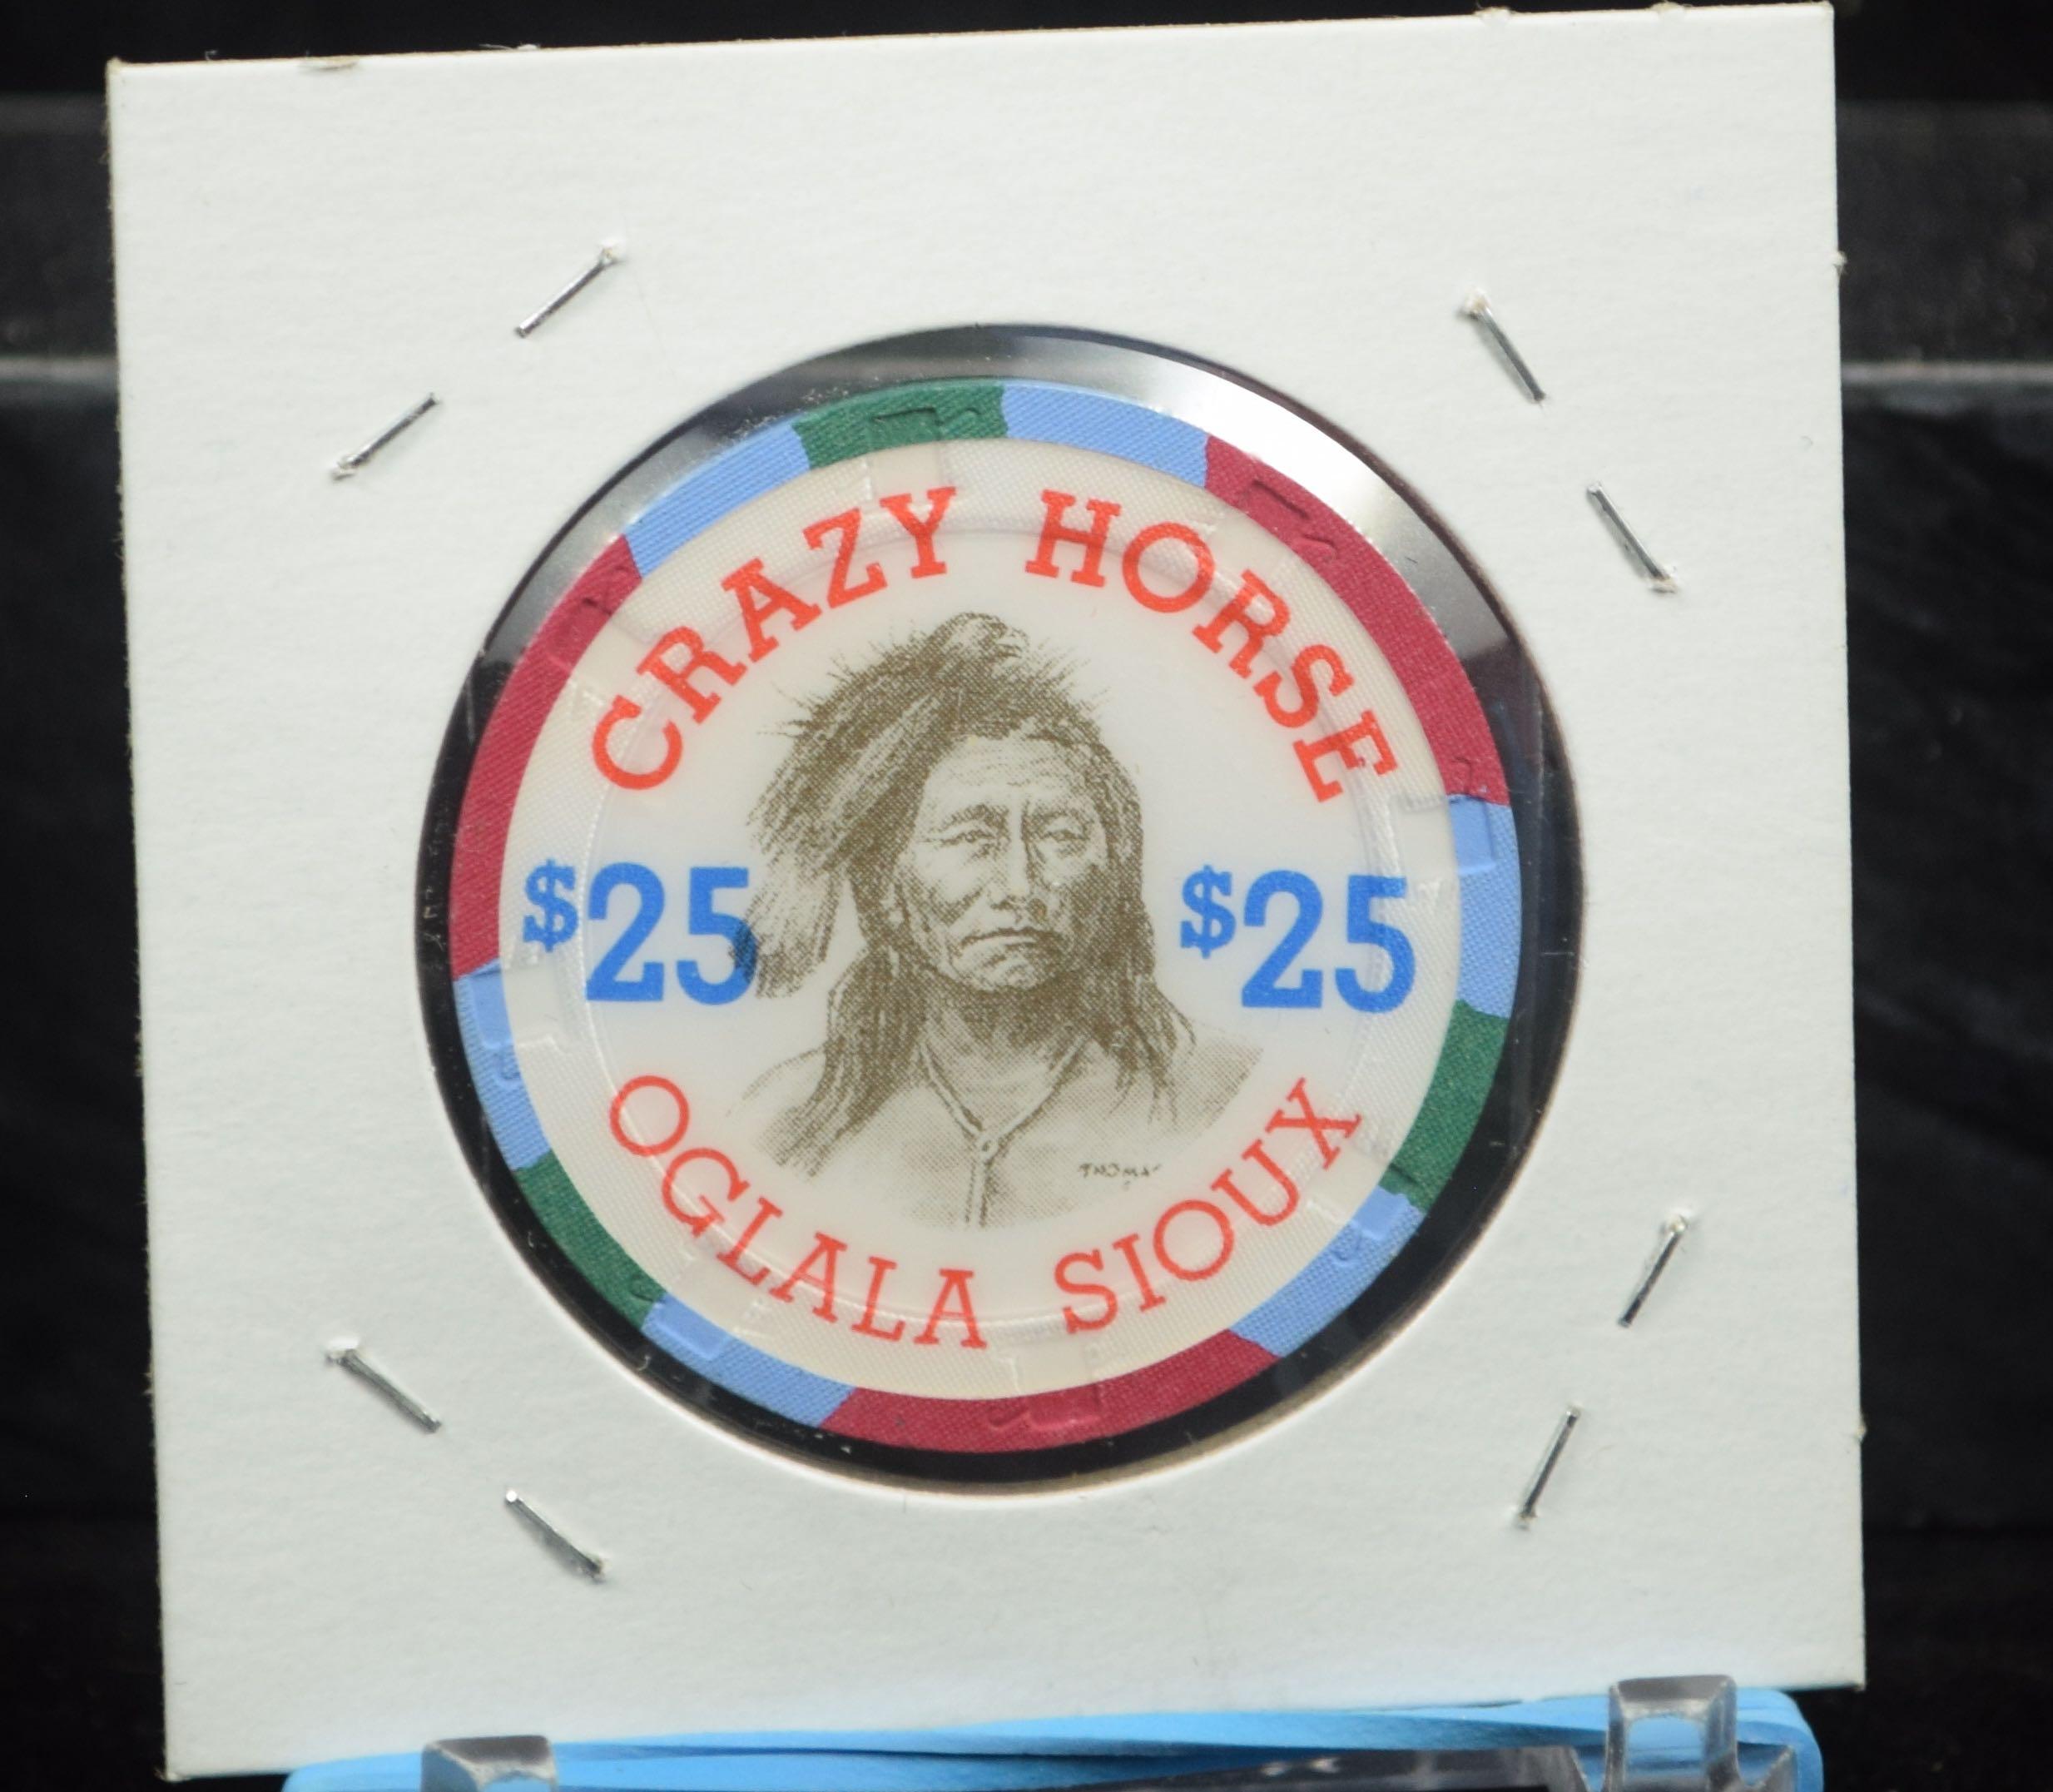 $25 Crazy Horse Casino Token Oglala Sioux